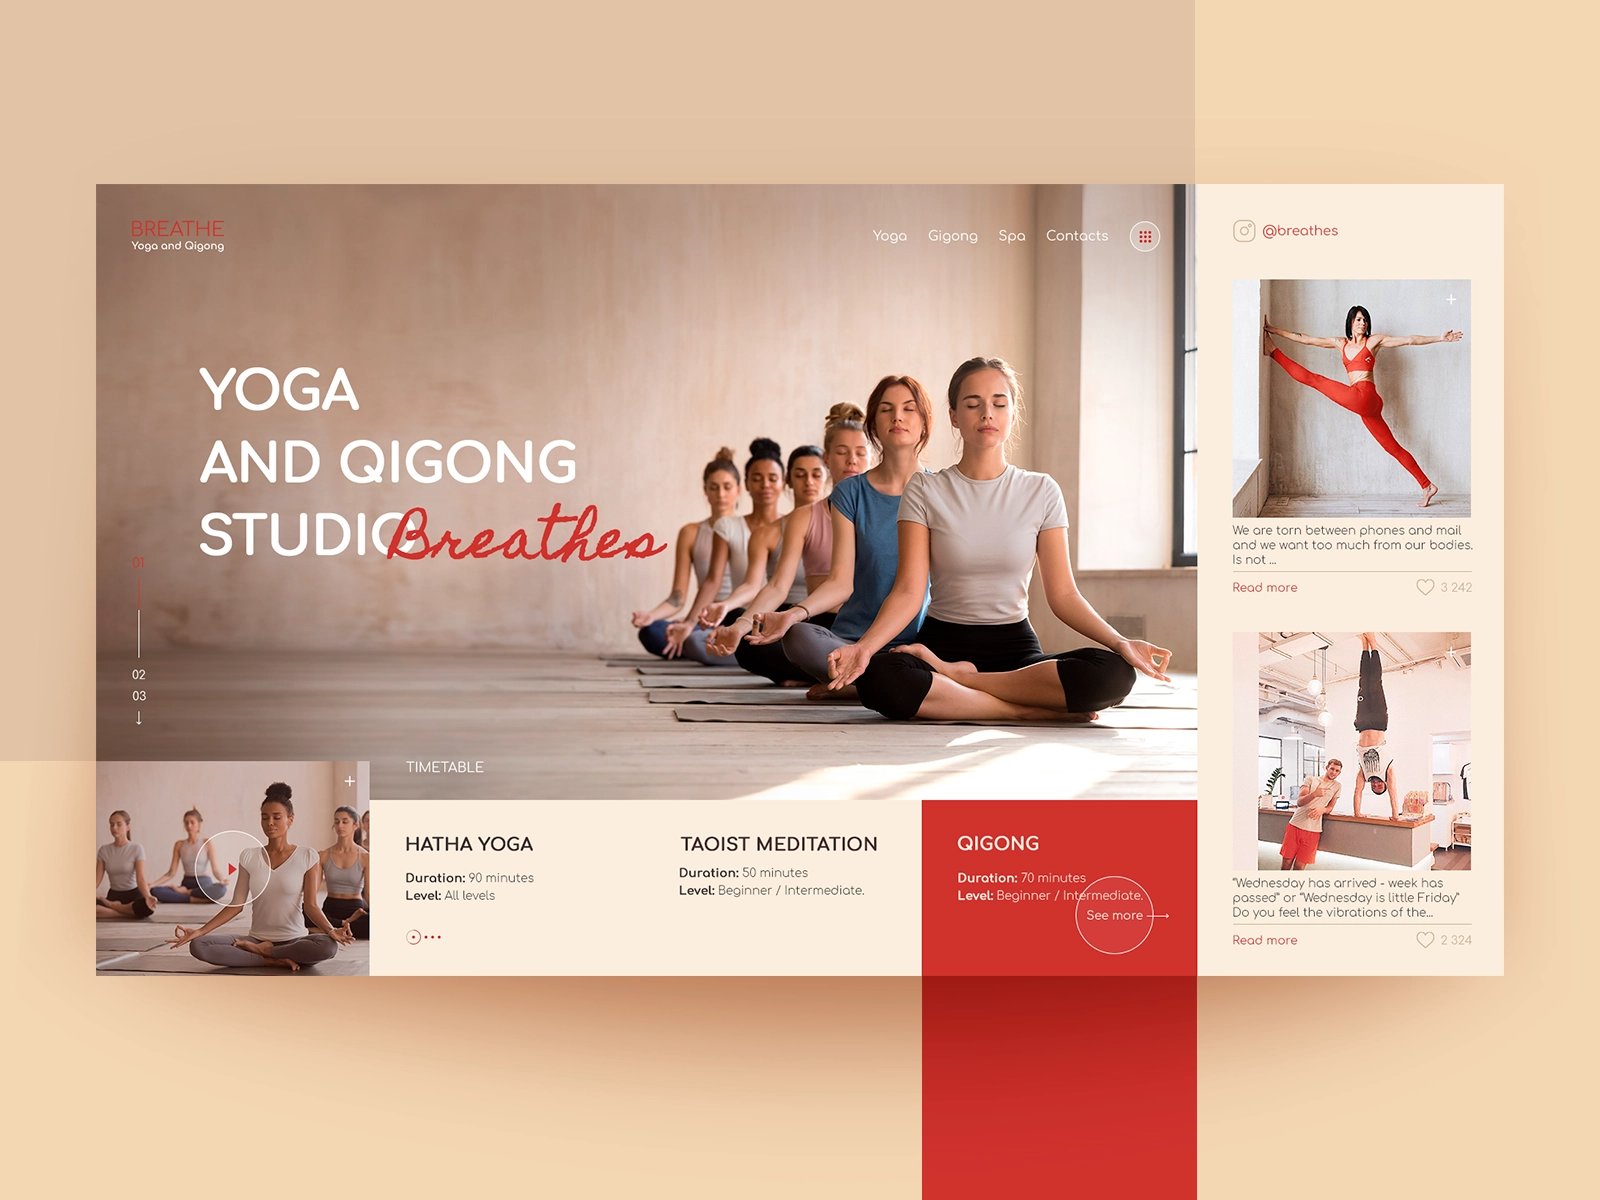 梵我合一！12款瑜伽运动健身类WEB界面设计灵感